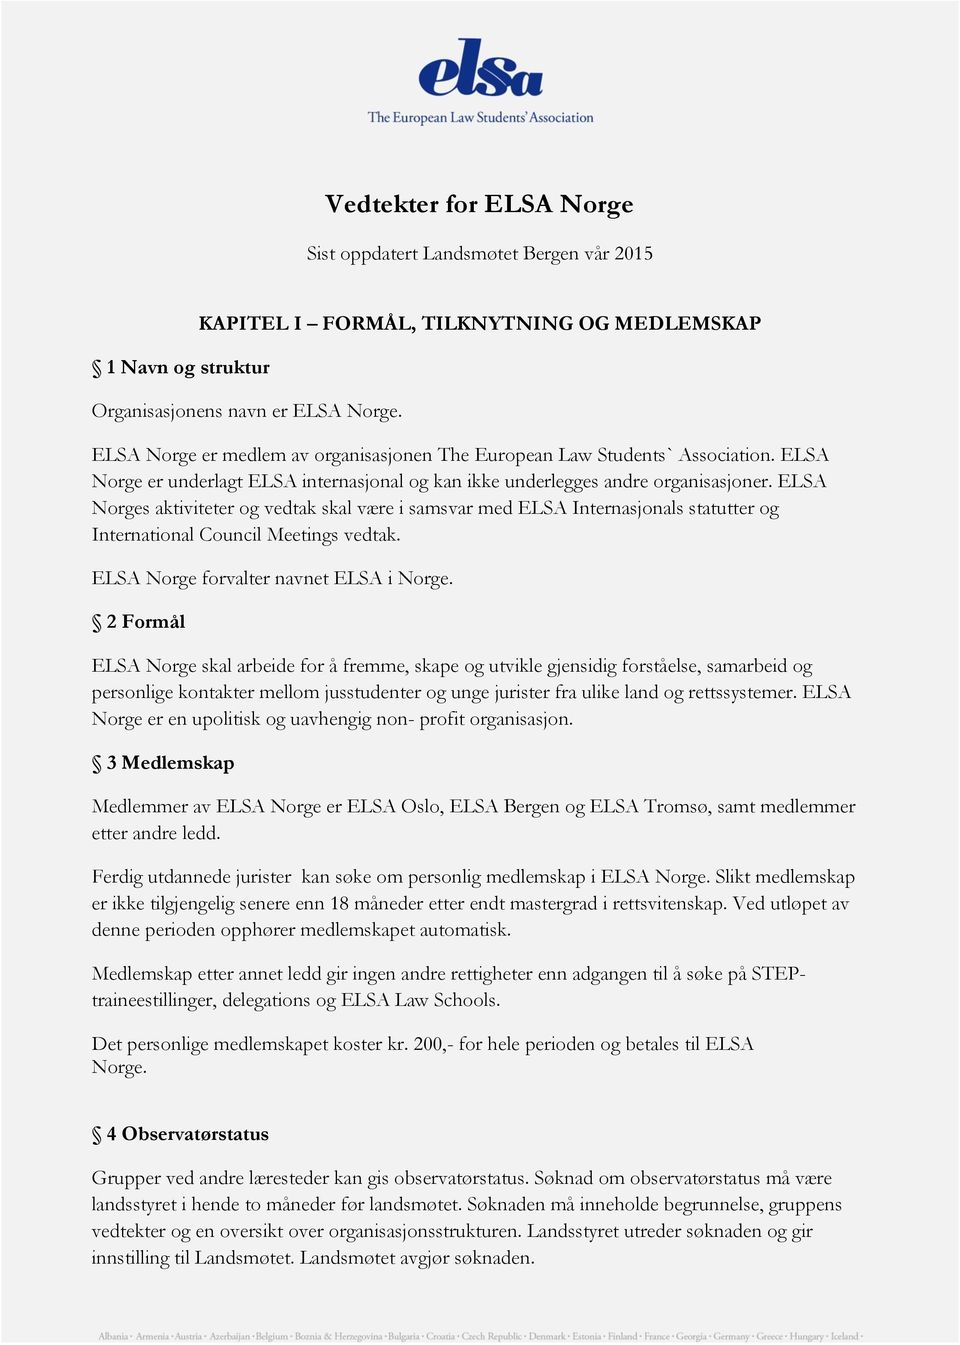 ELSA Norges aktiviteter og vedtak skal være i samsvar med ELSA Internasjonals statutter og International Council Meetings vedtak. ELSA Norge forvalter navnet ELSA i Norge.